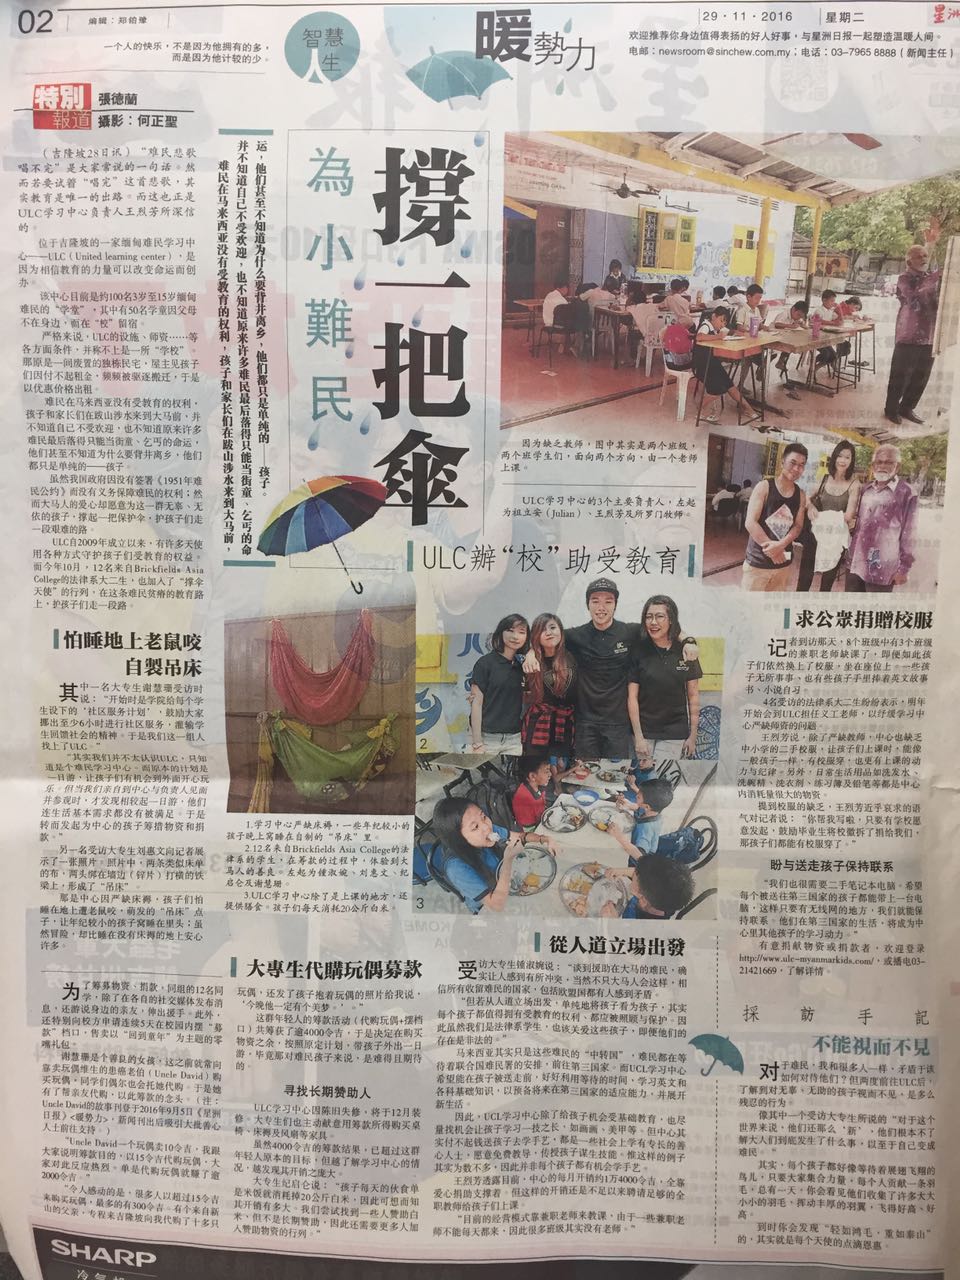 “Oriental Daily - 為小難民 撐一把傘” 